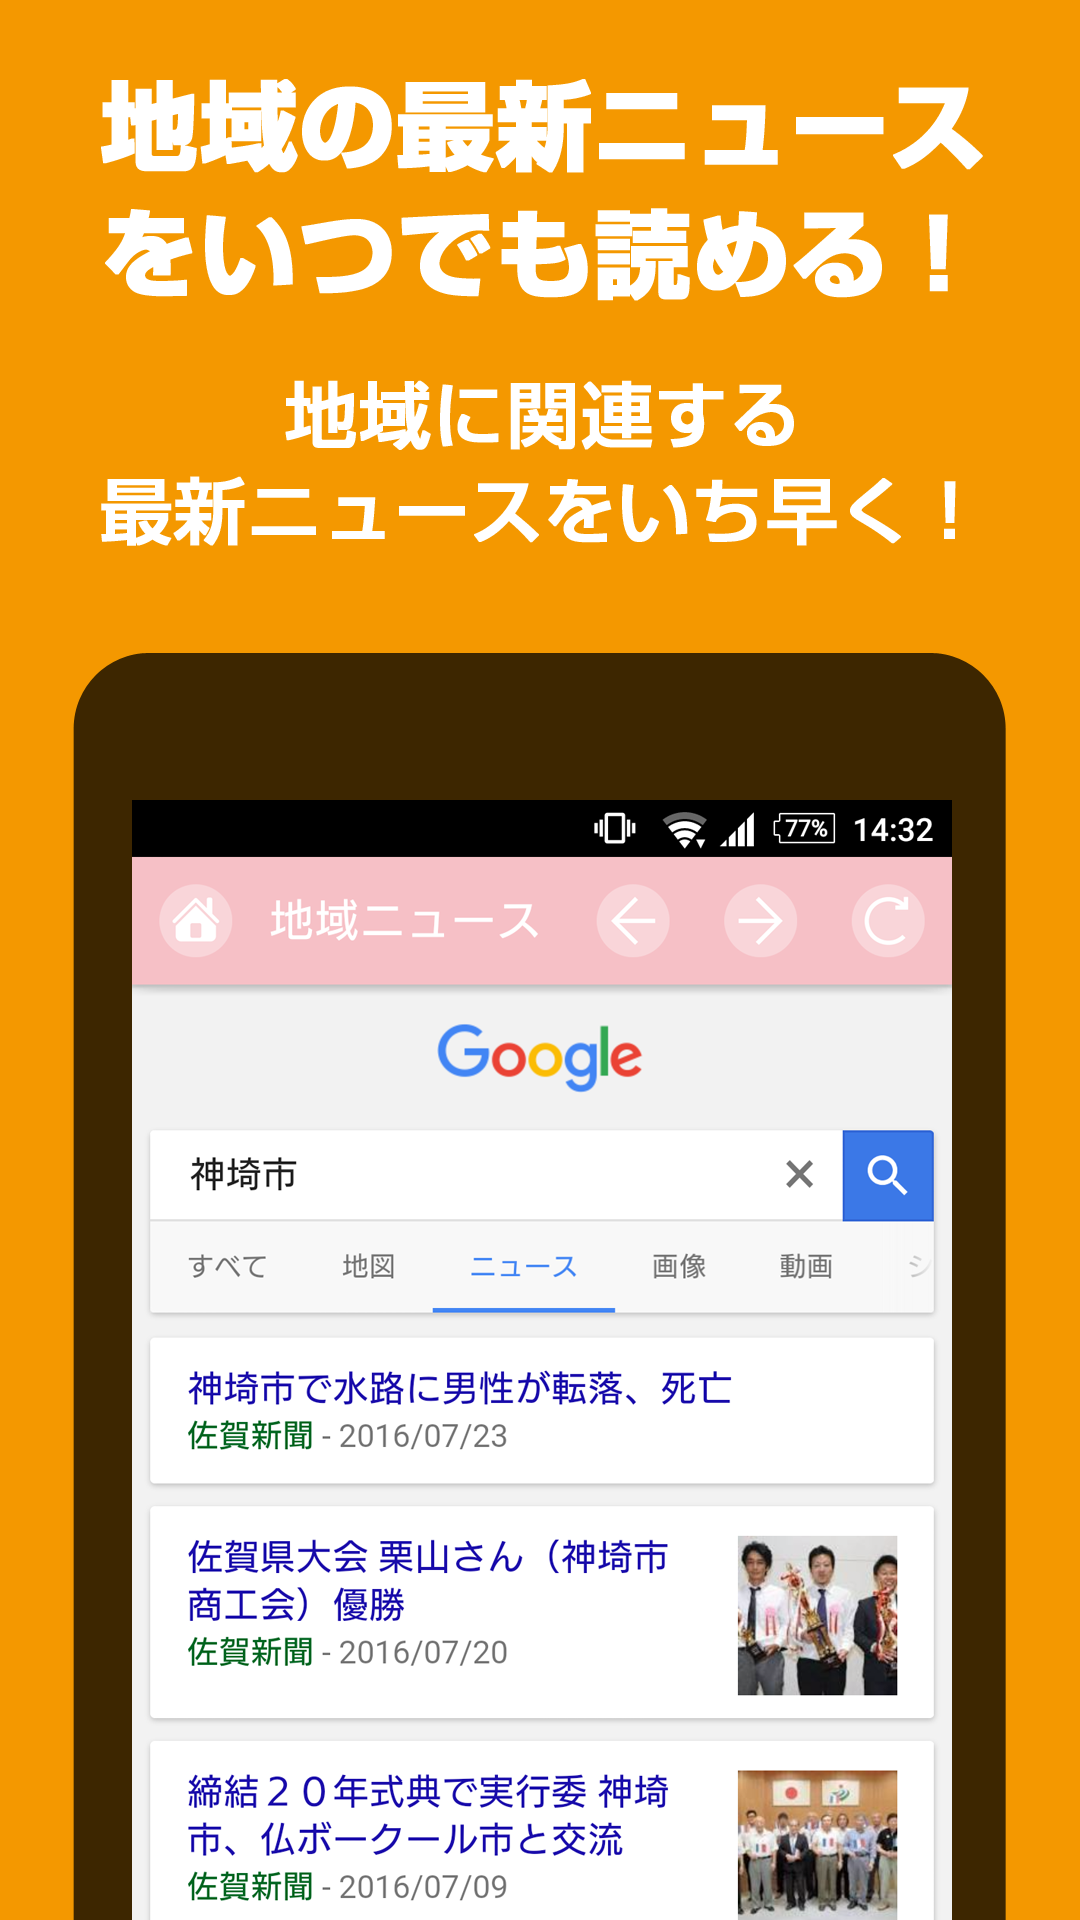 Android application かんざきナビ - 佐賀県神埼市の防災や生活情報をお届け - screenshort